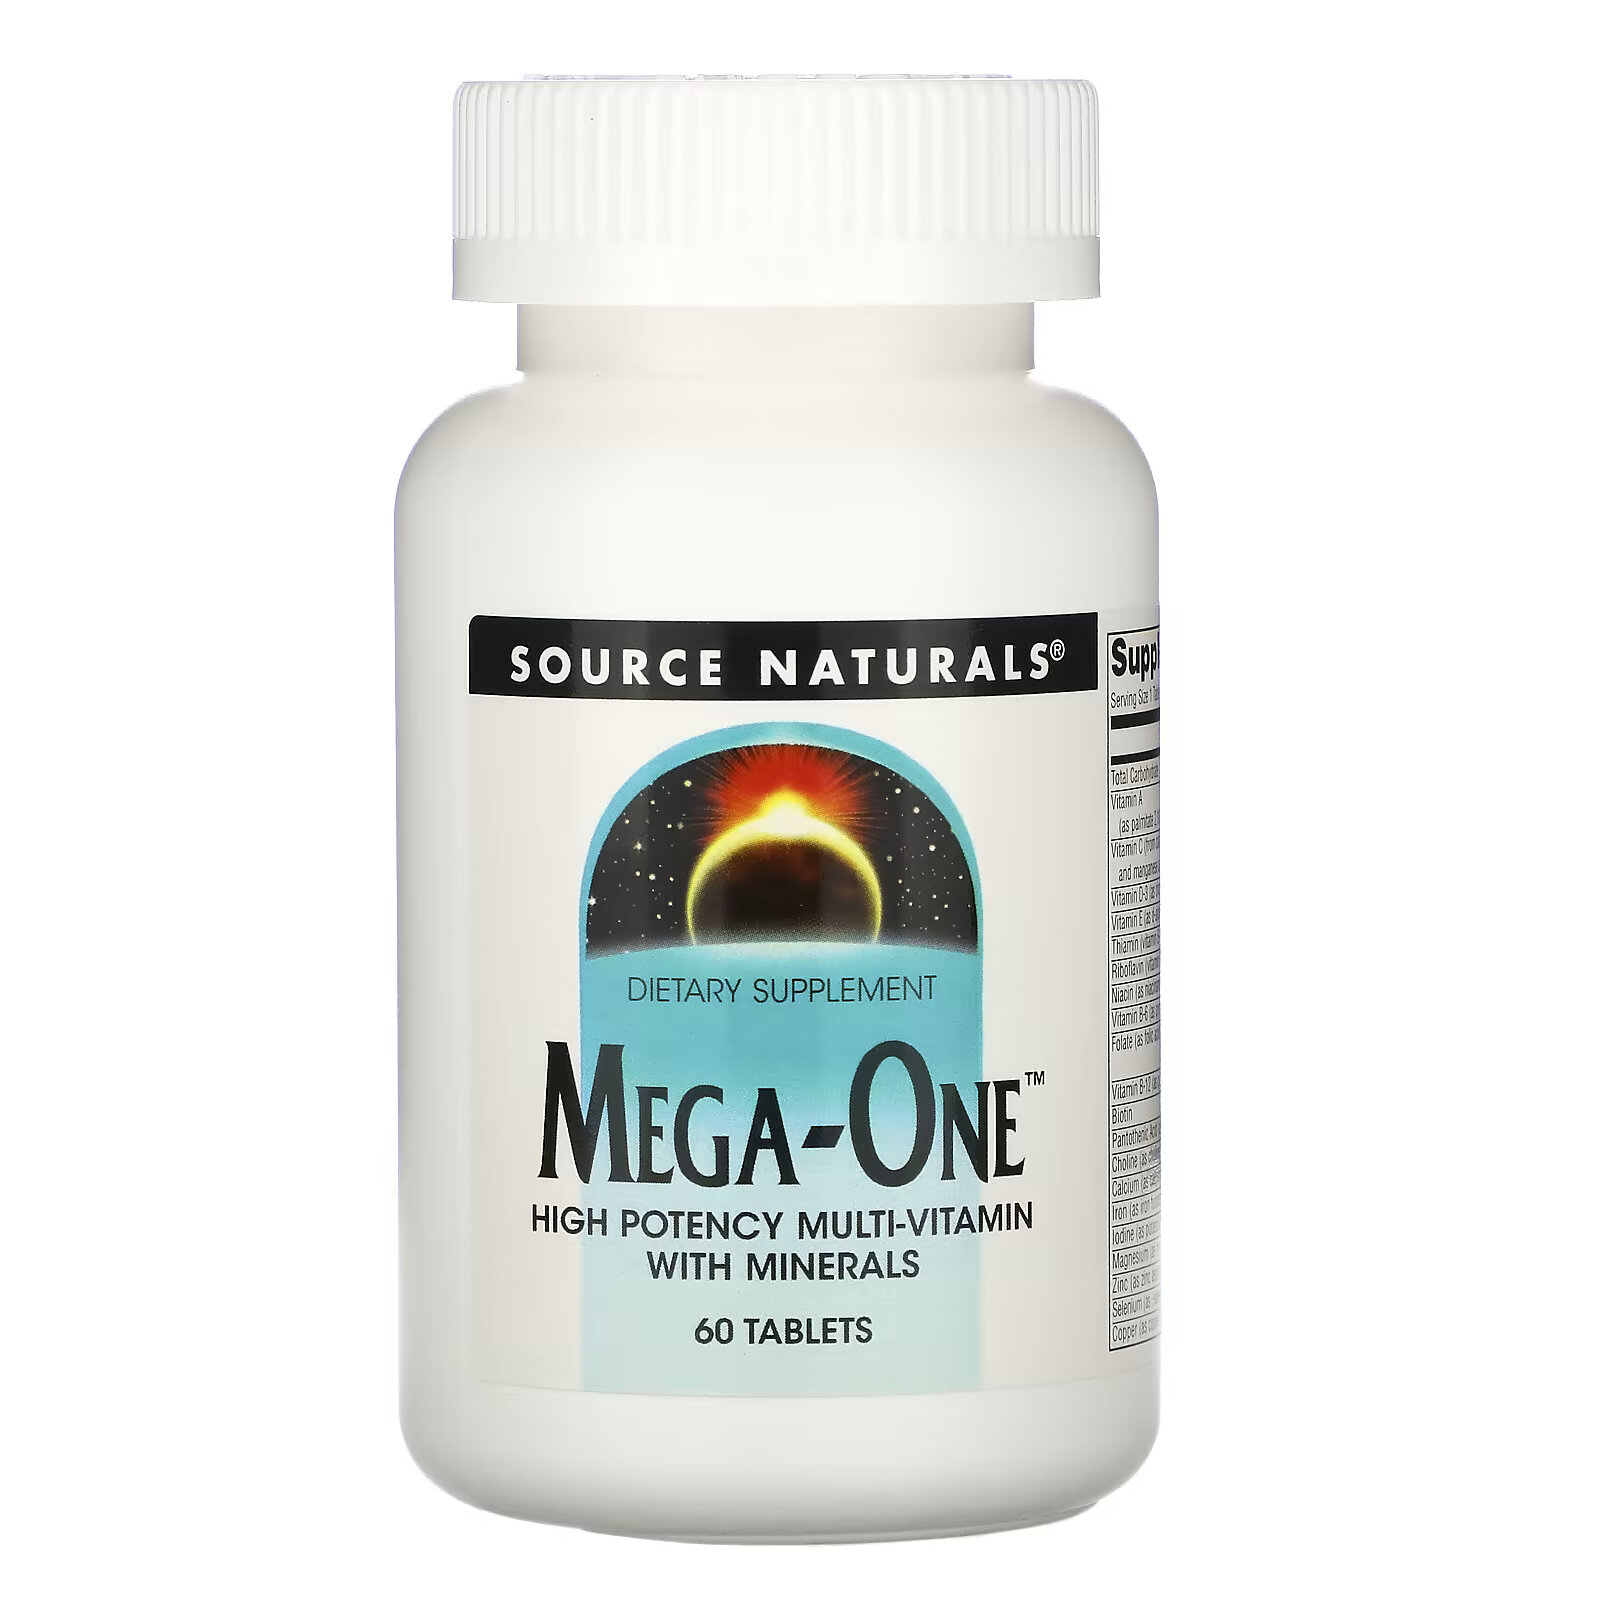 source naturals mega one высокоэффективный мультивитамин с минералами 60 таблеток Source Naturals, Mega-One, высокоэффективный мультивитамин с минералами, 60 таблеток